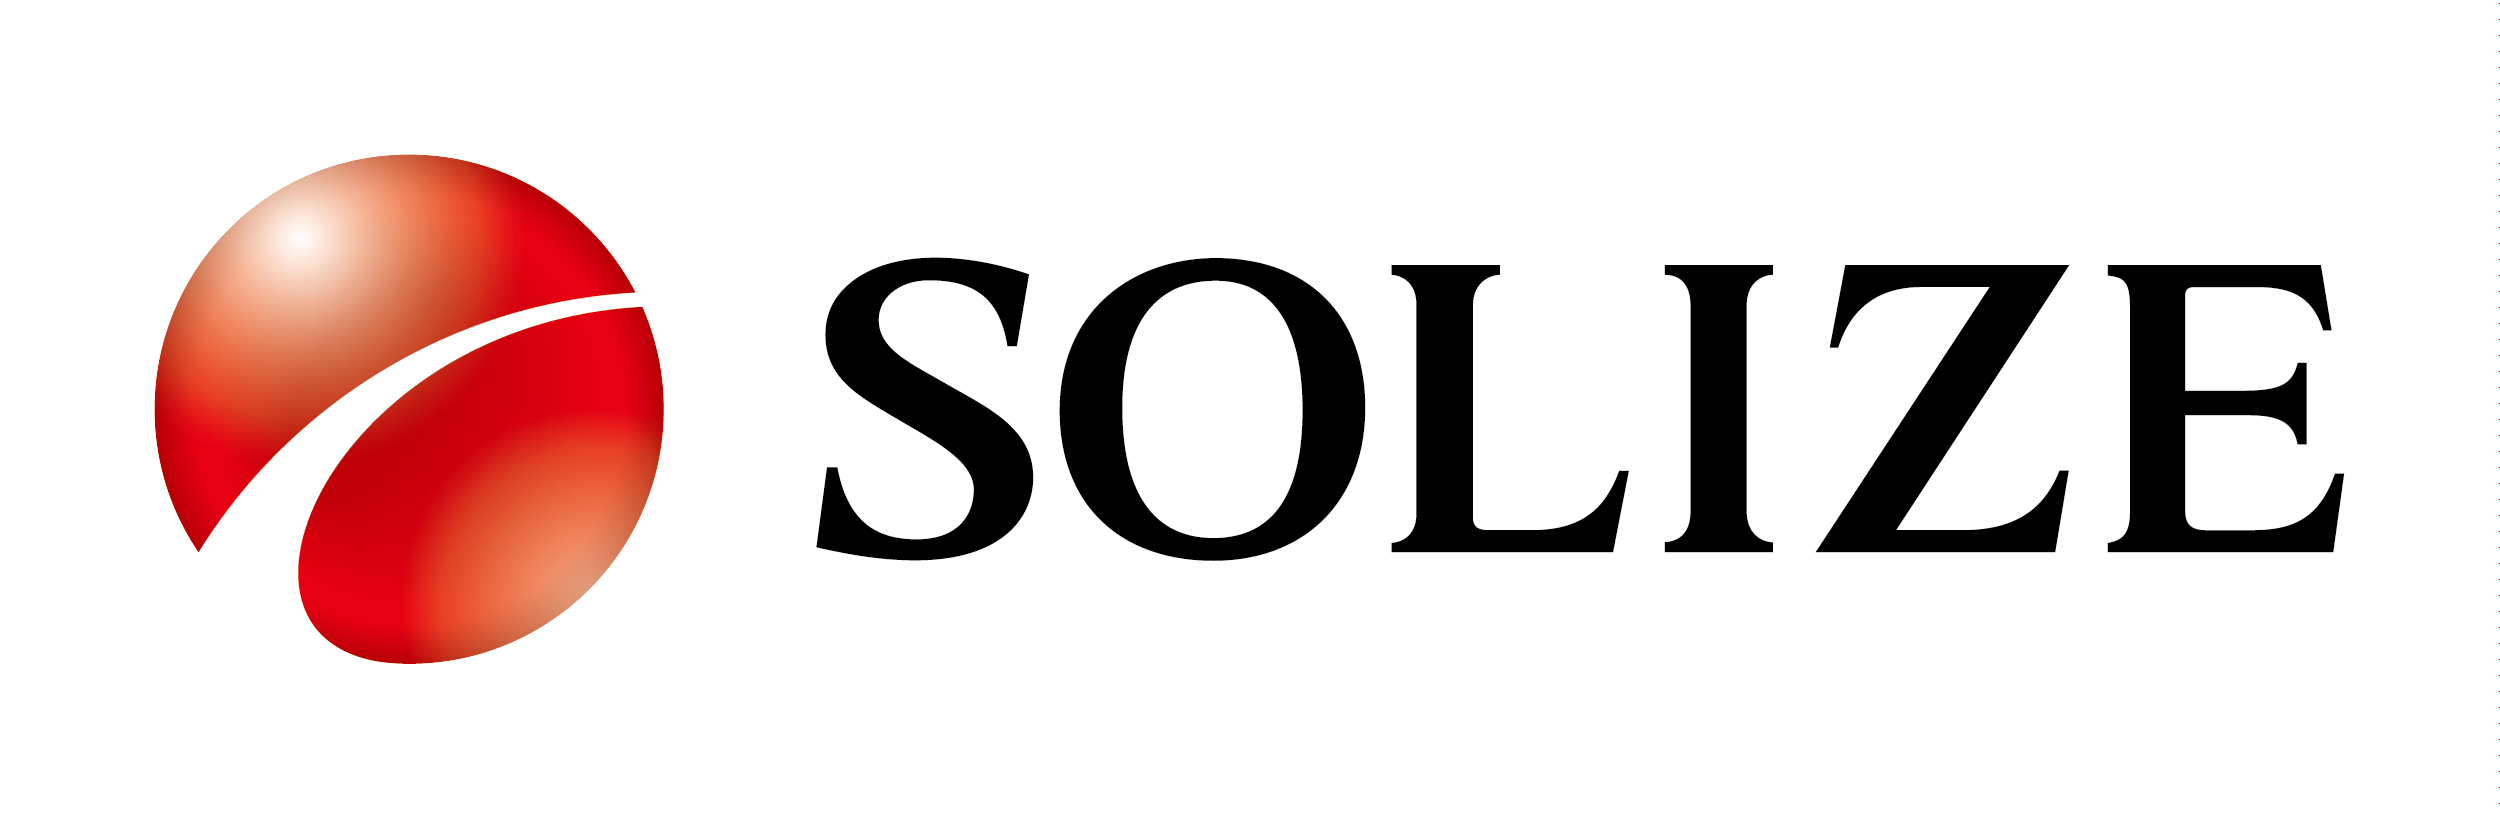 SOLIZE Corporation